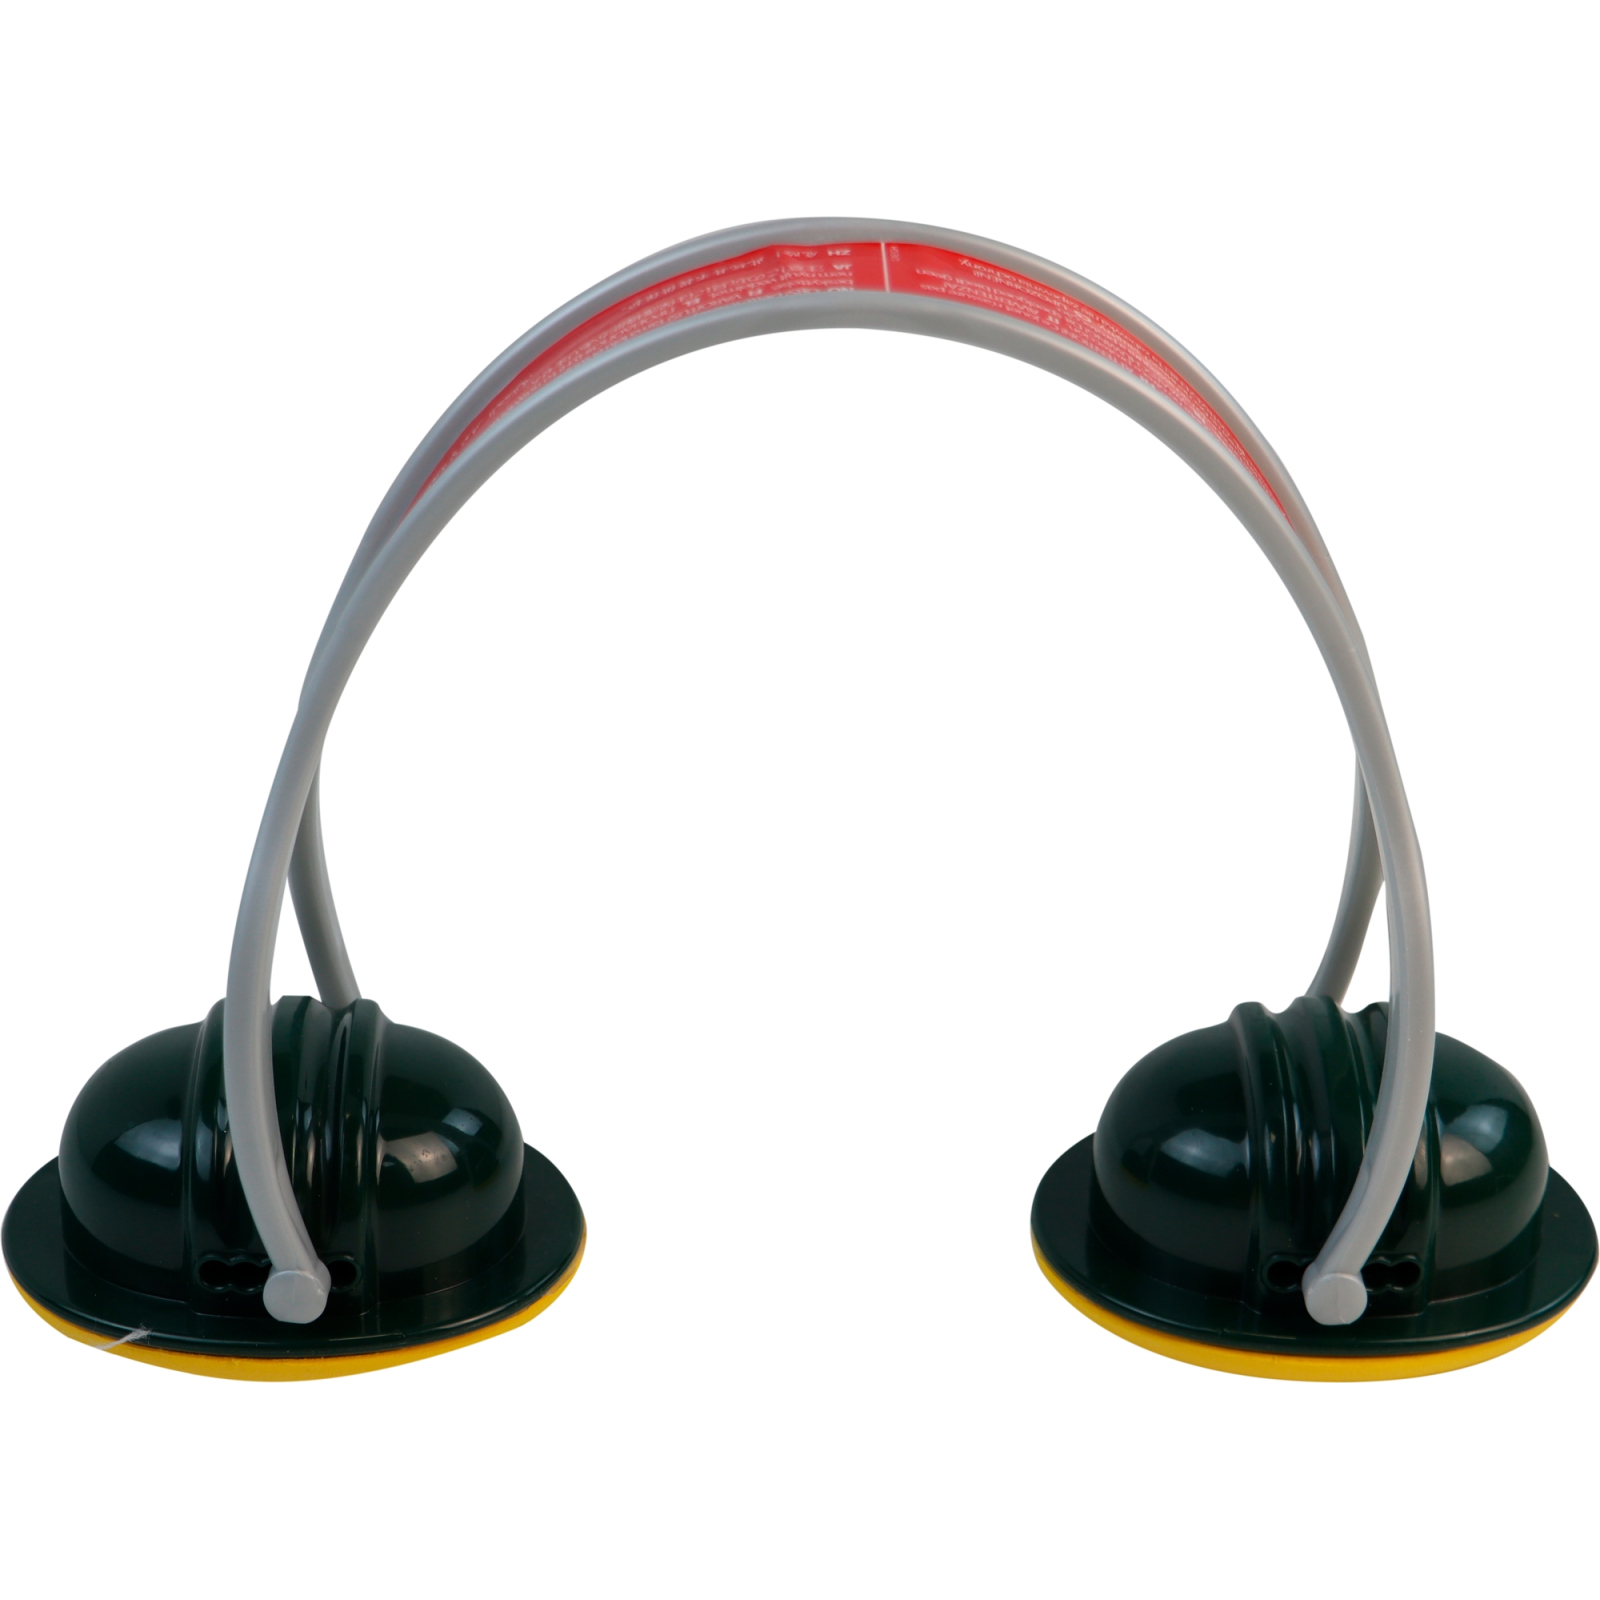 Игровой набор Bosch аксеуаров со шлемом (8537) изображение 2